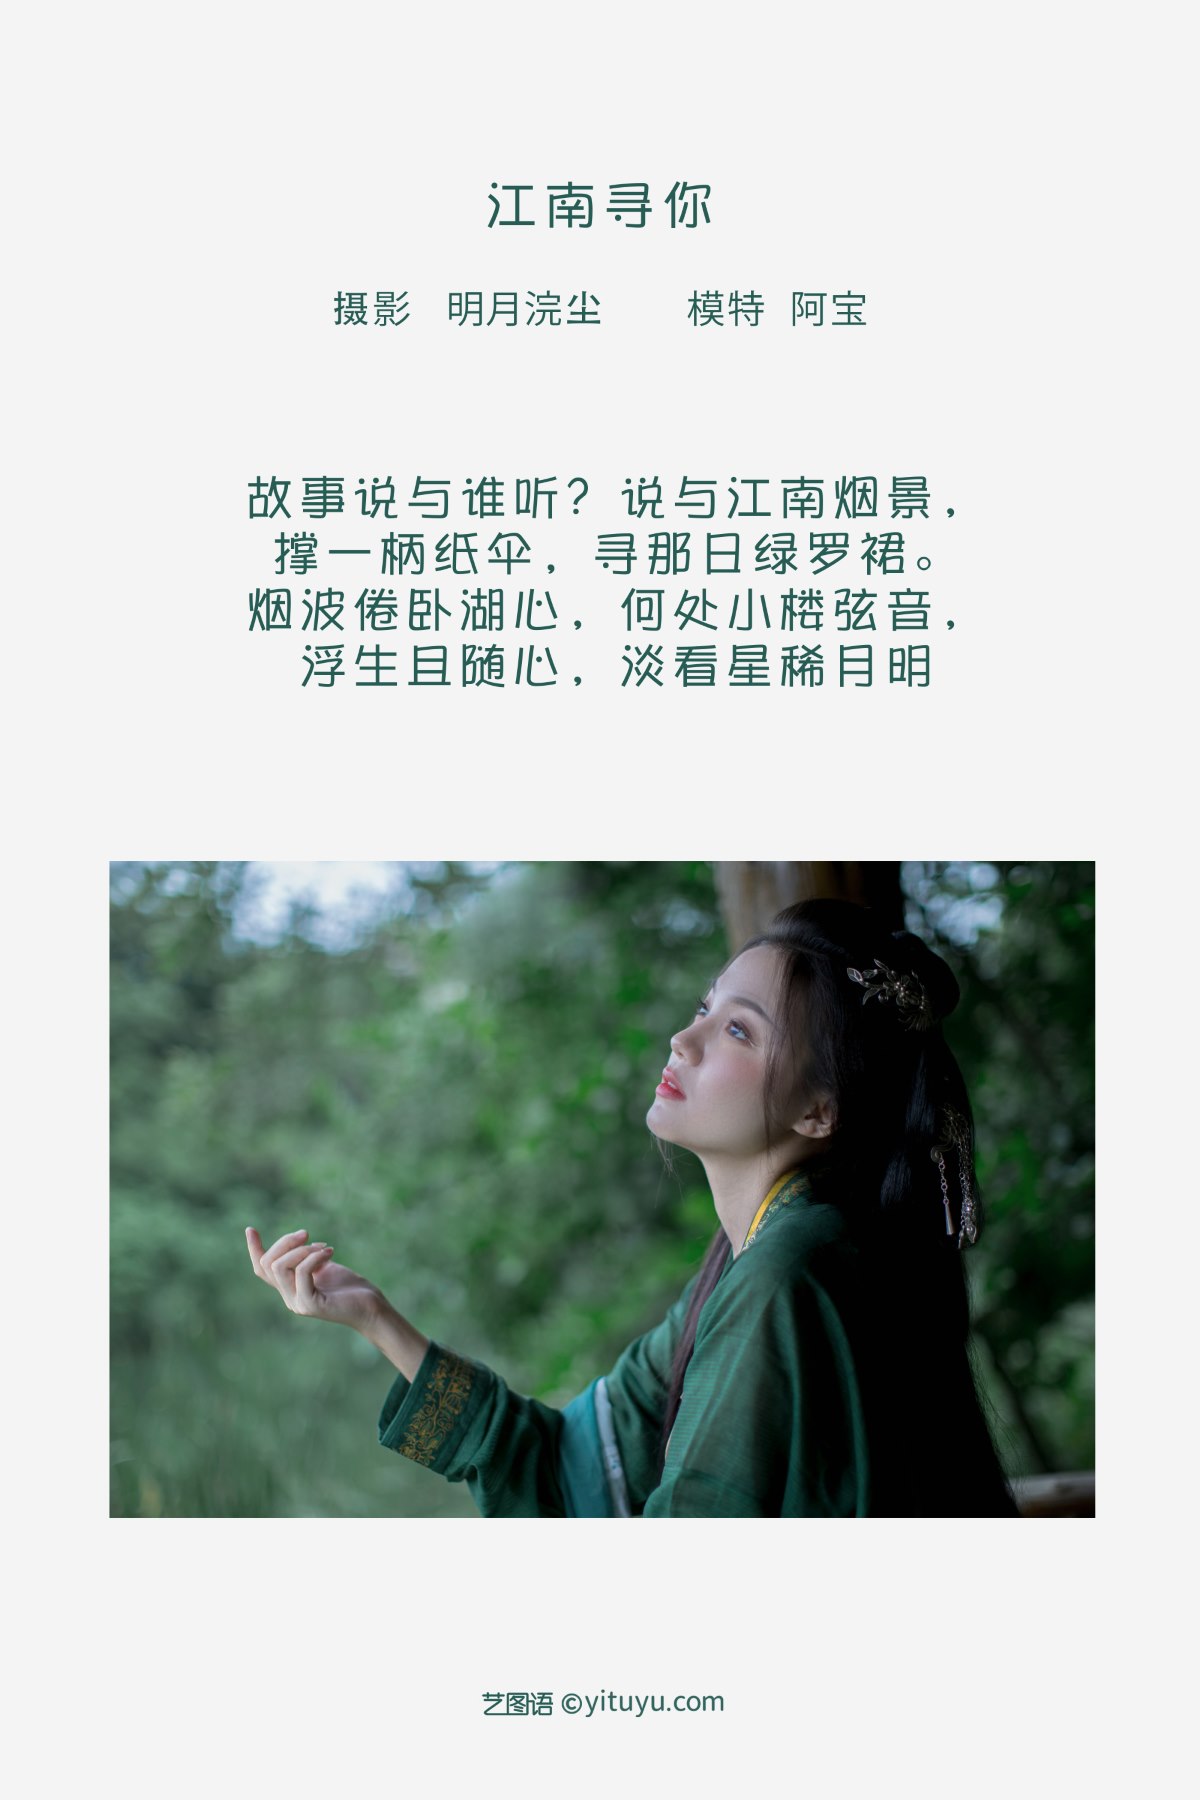 YiTuYu艺图语 Vol 2118 Xia Yun Shi Zhi Xiao Kaola 0001 0893842726.jpg